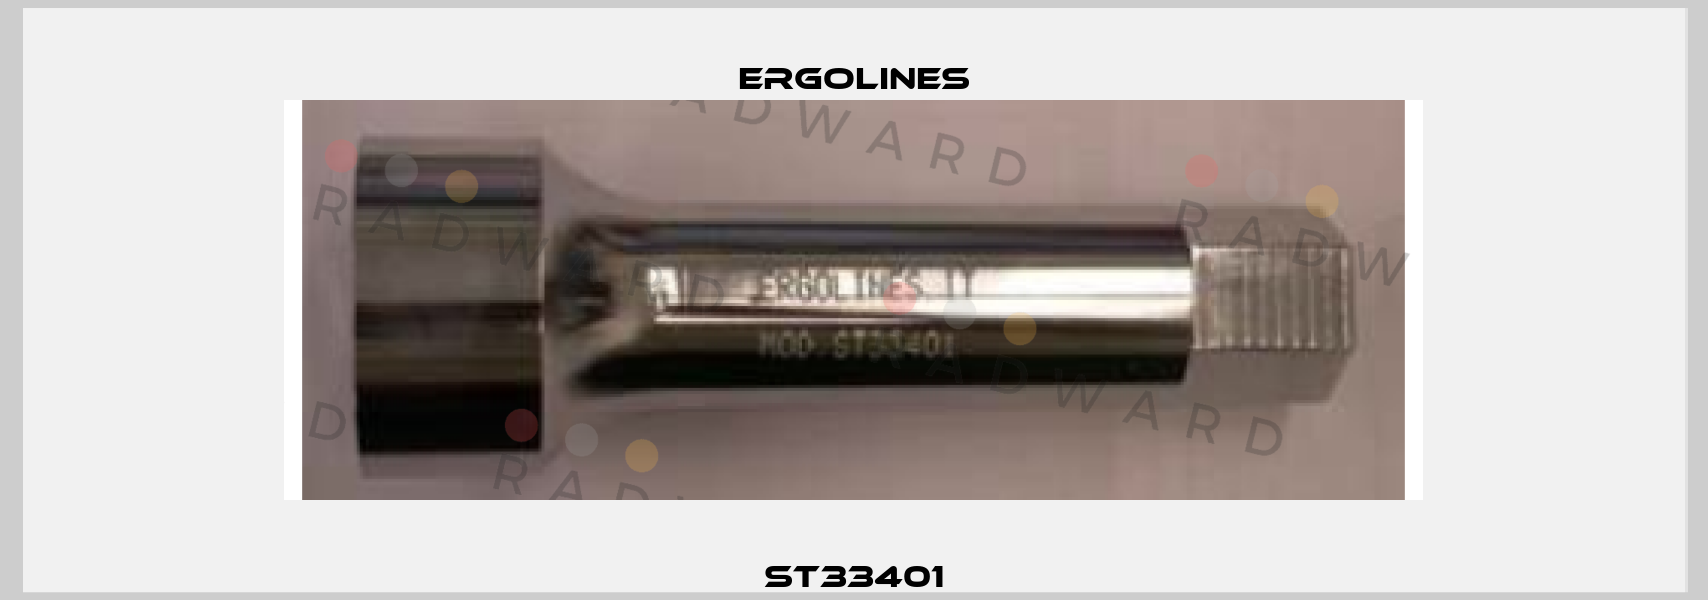 ST33401 Ergolines